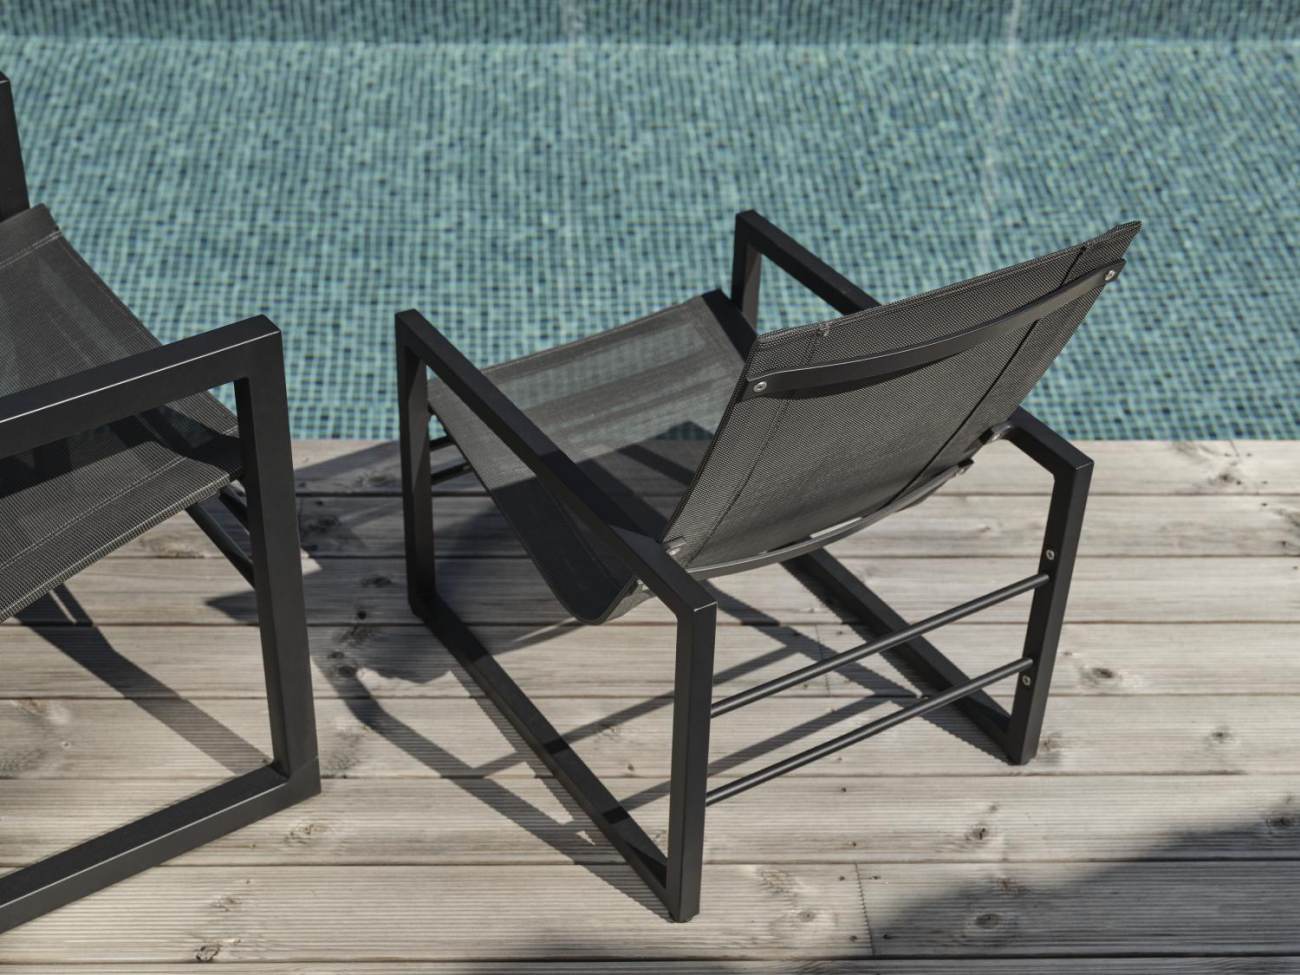 Der Gartensessel Vevi überzeugt mit seinem modernen Design. Gefertigt wurde er aus Textilene, welches einen schwarzen Farbton besitzt. Das Gestell ist aus Metall und hat eine schwarze Farbe. Die Sitzhöhe des Sessels beträgt 29 cm.